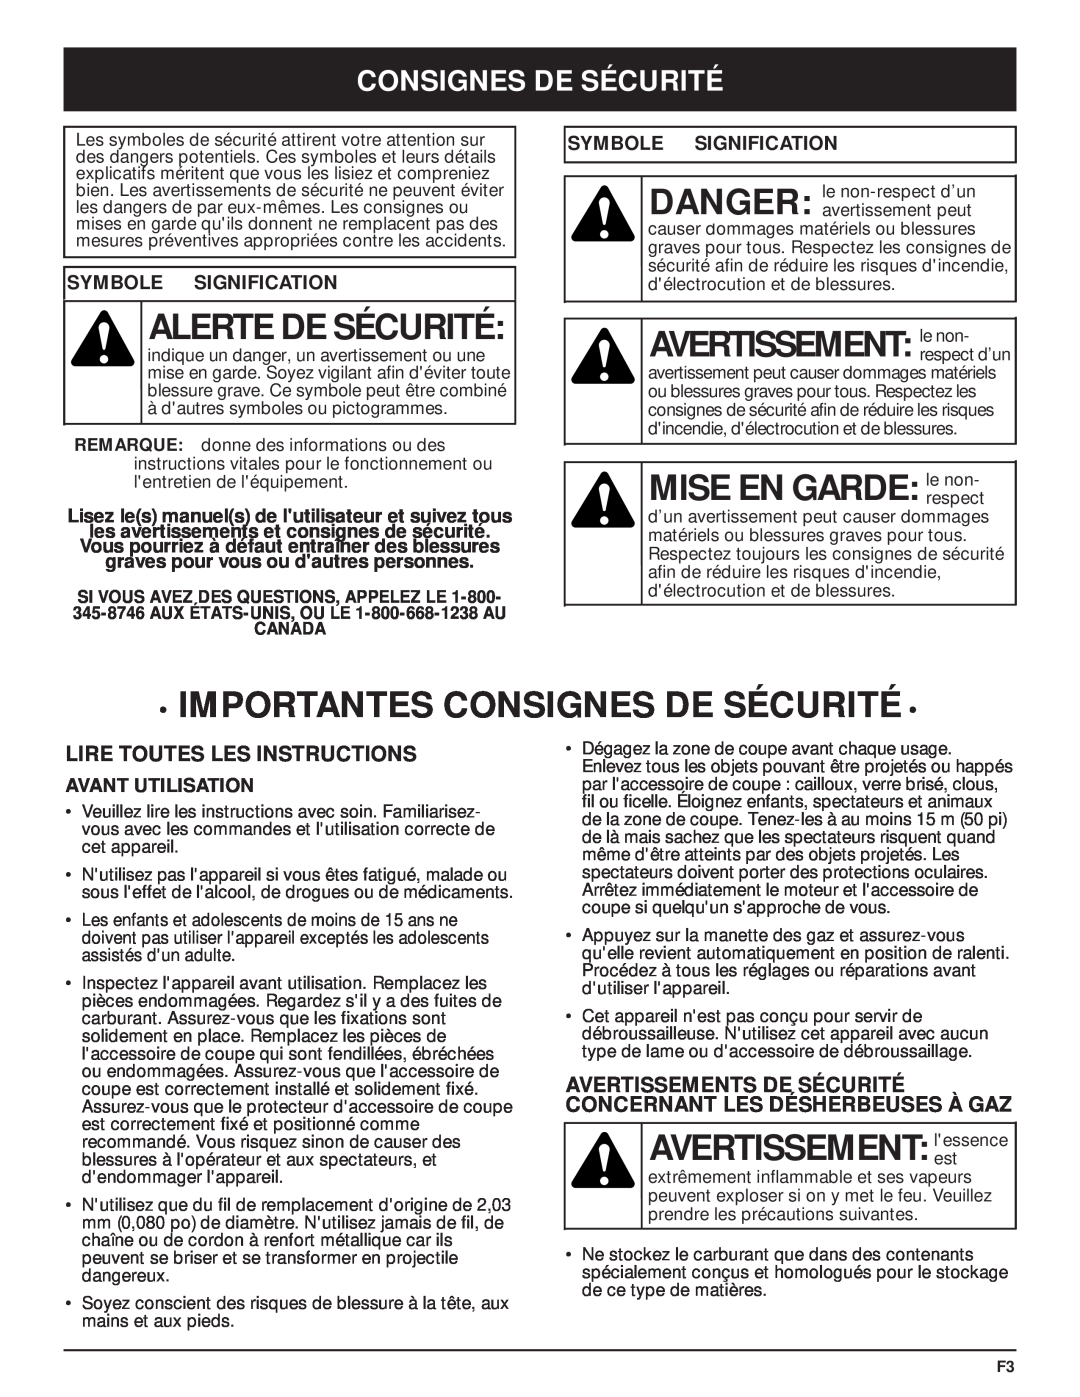 MTD Y28 manual Alerte De Sécurité, AVERTISSEMENT le non, MISE EN GARDE le non, Importantes Consignes De Sécurité 